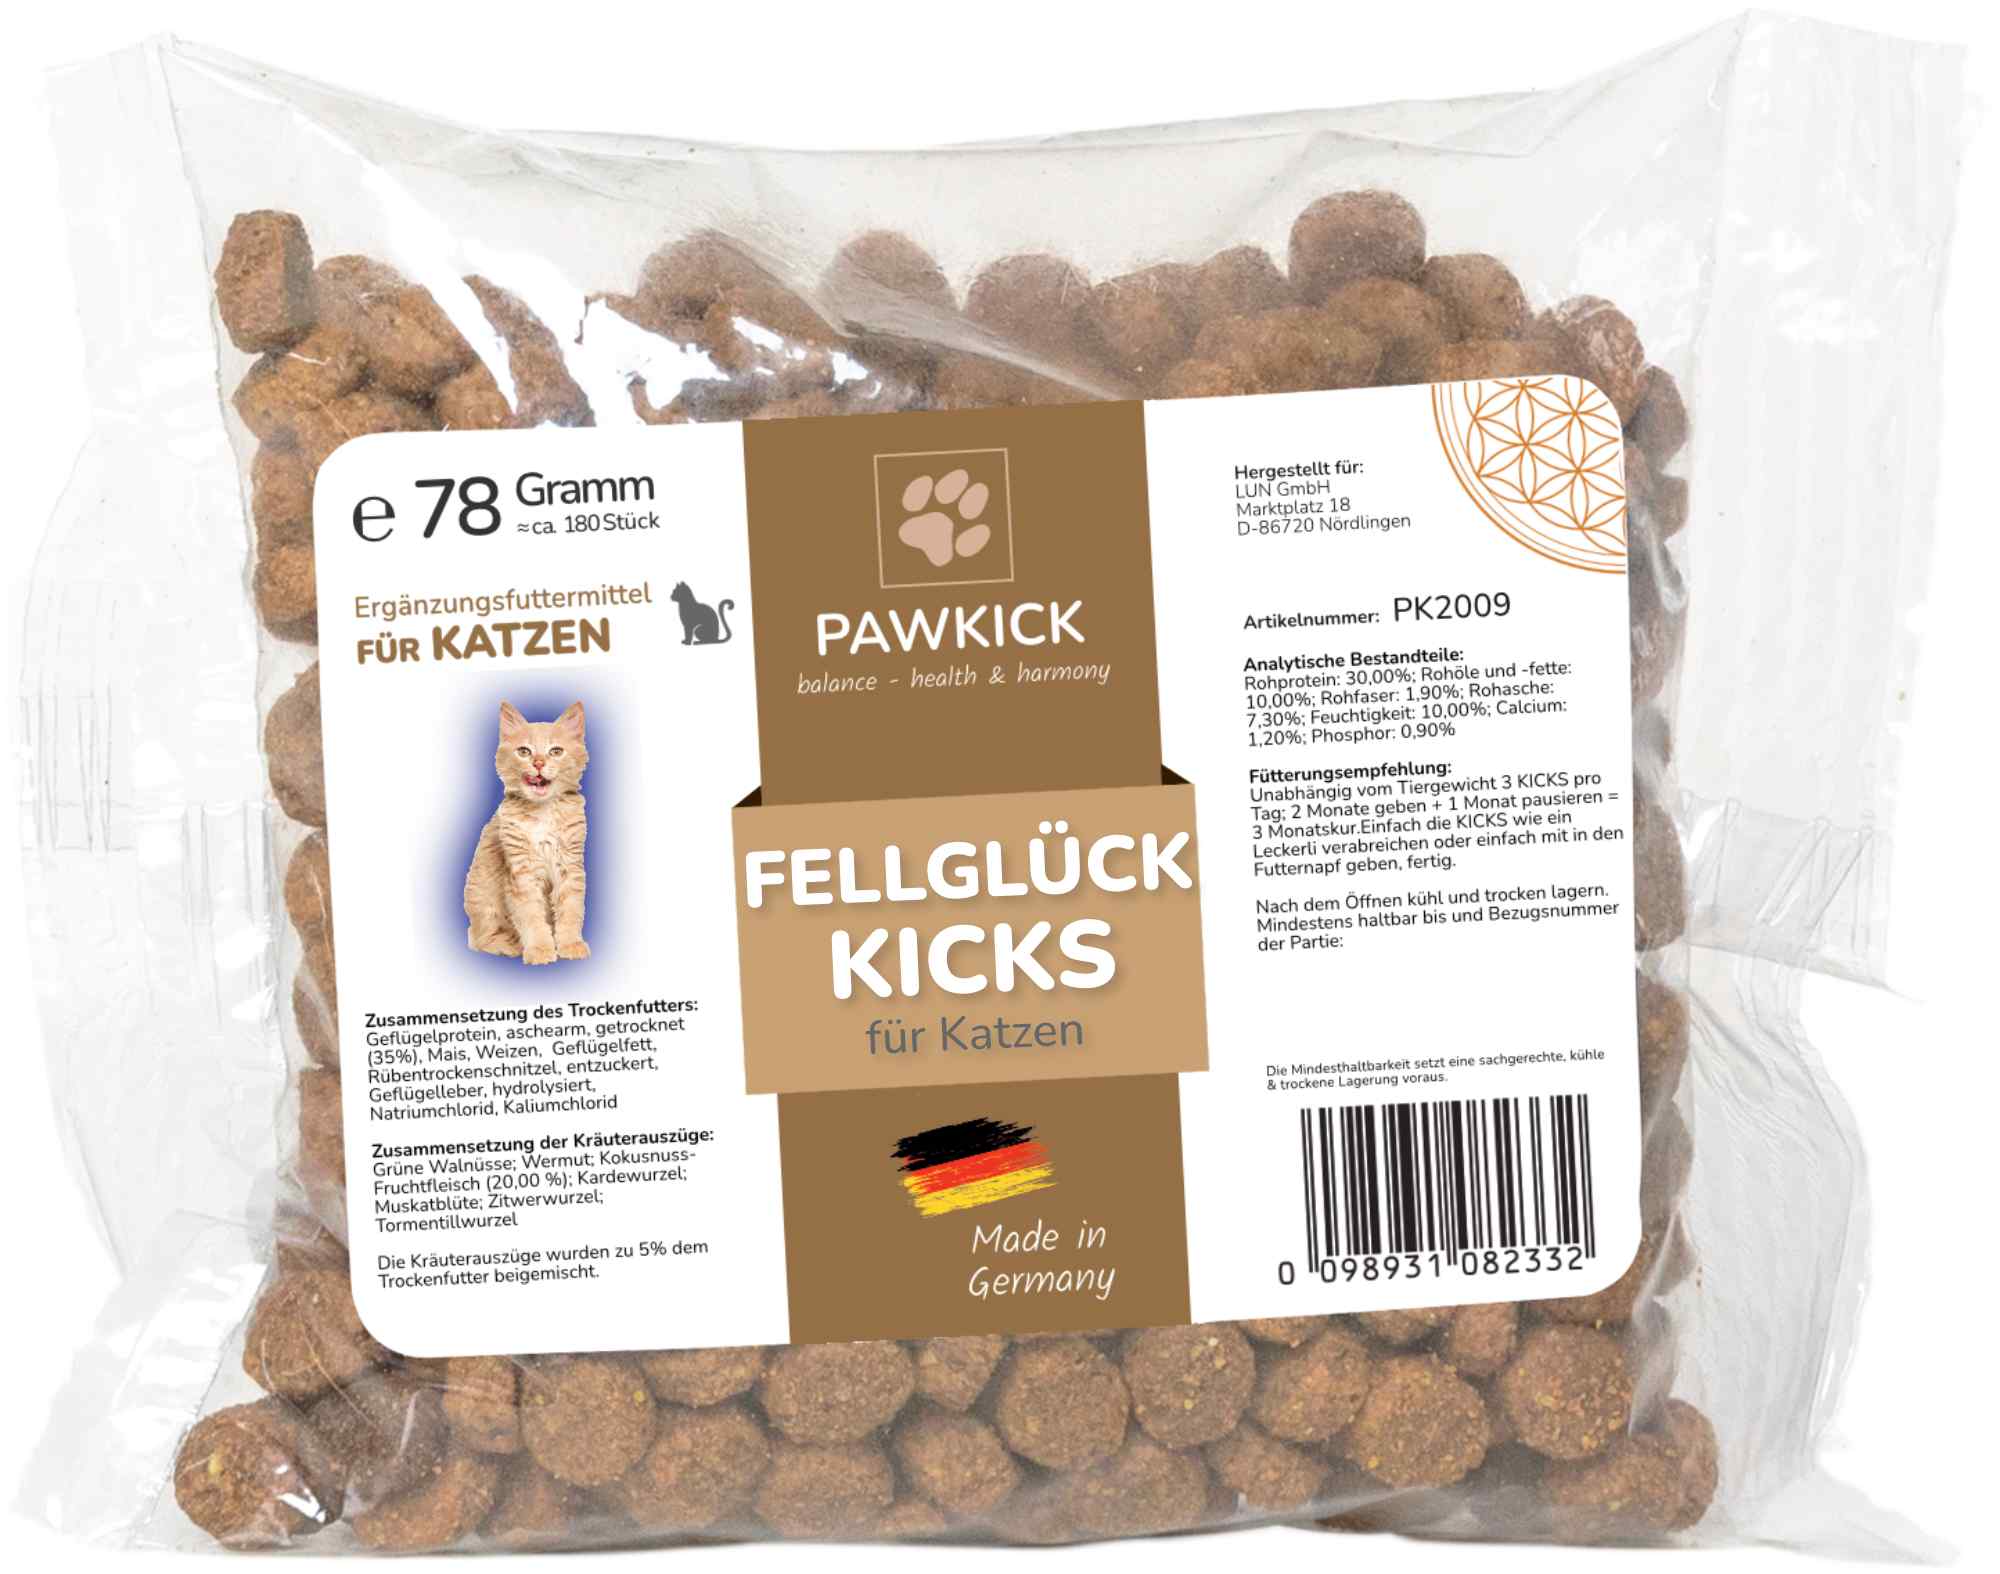 PAWKICK FELLGLÜCK-KICKS Cat - 3 Monatskur!  zur Unterstützung bei Zecken